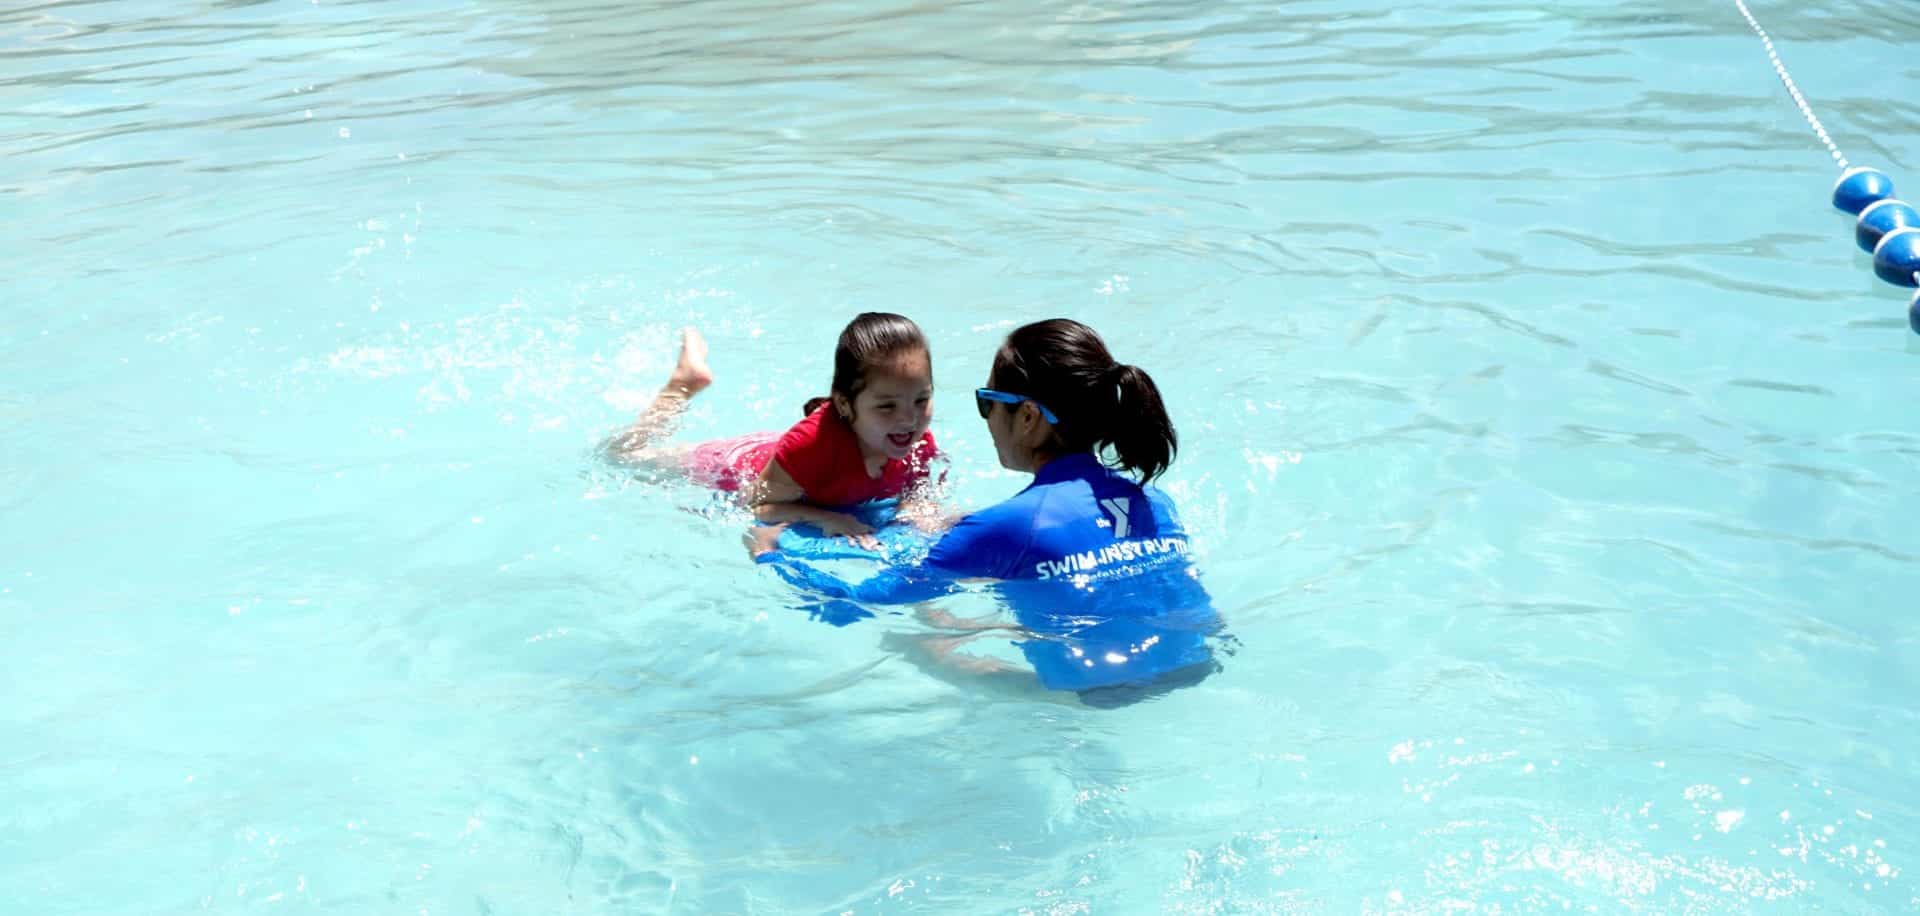 3 Ways to Help Keep Kids Safe Around Water This Summer